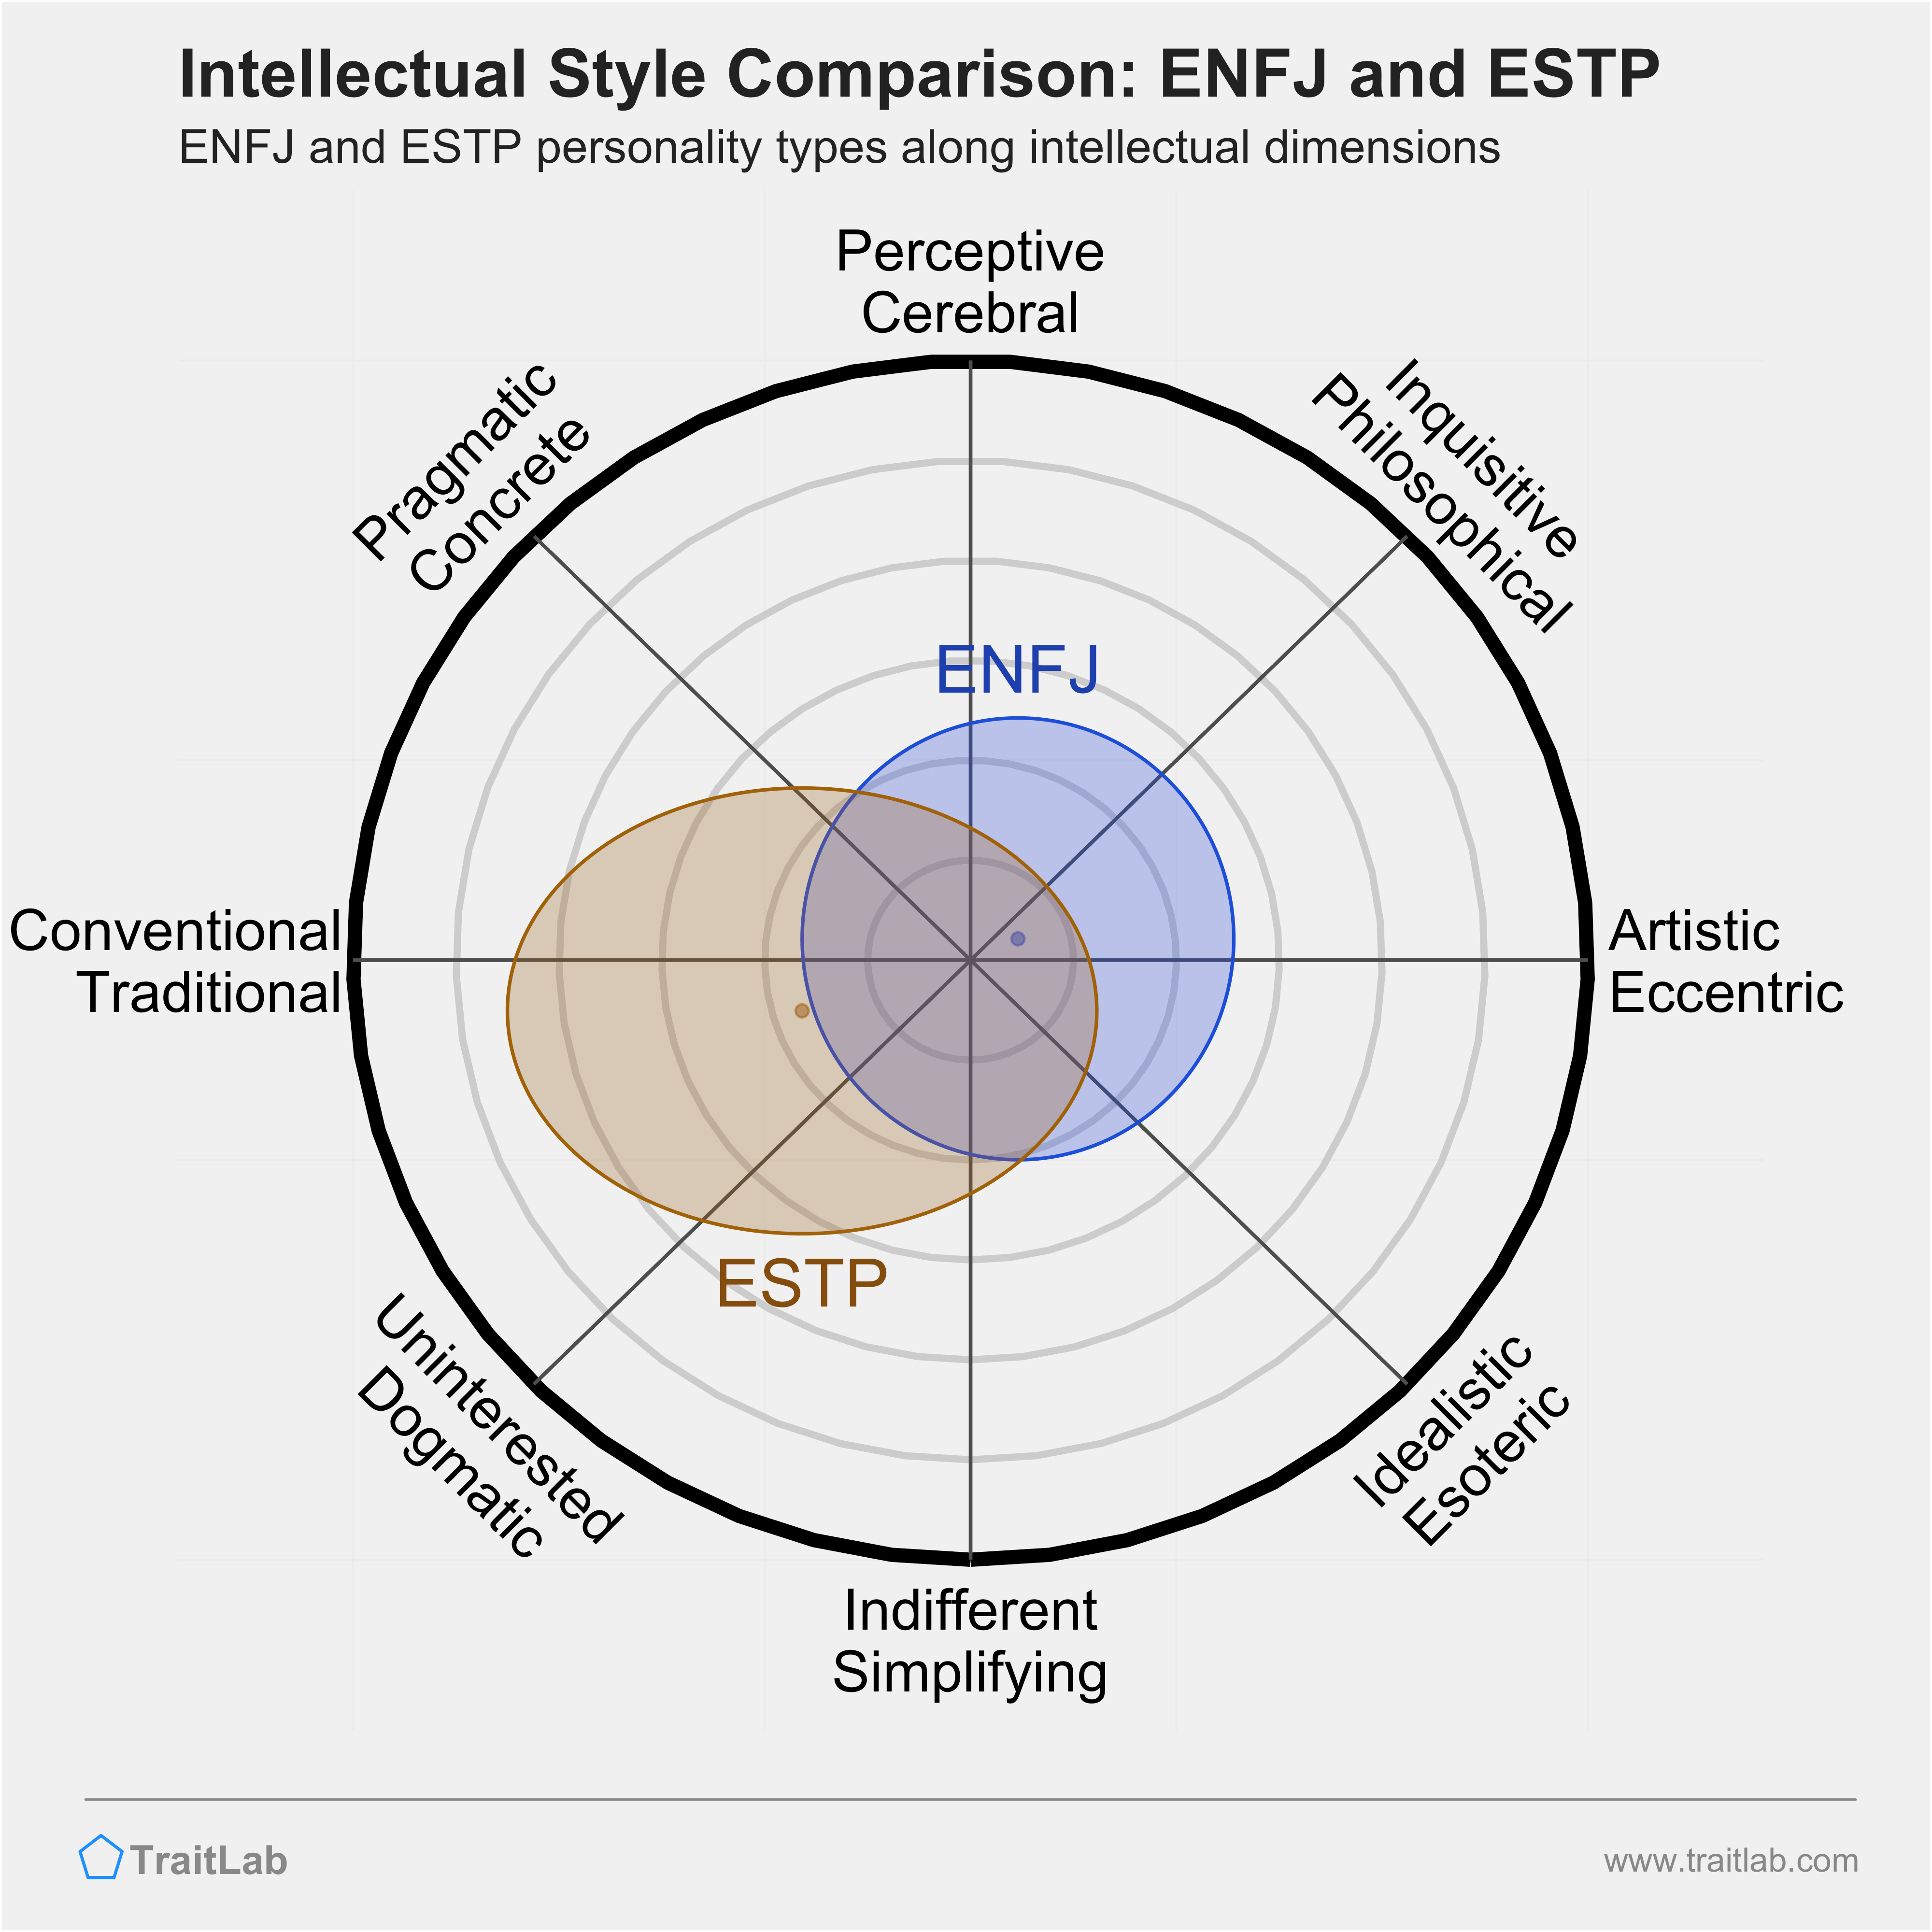 ENFJ and ESTP comparison across intellectual dimensions